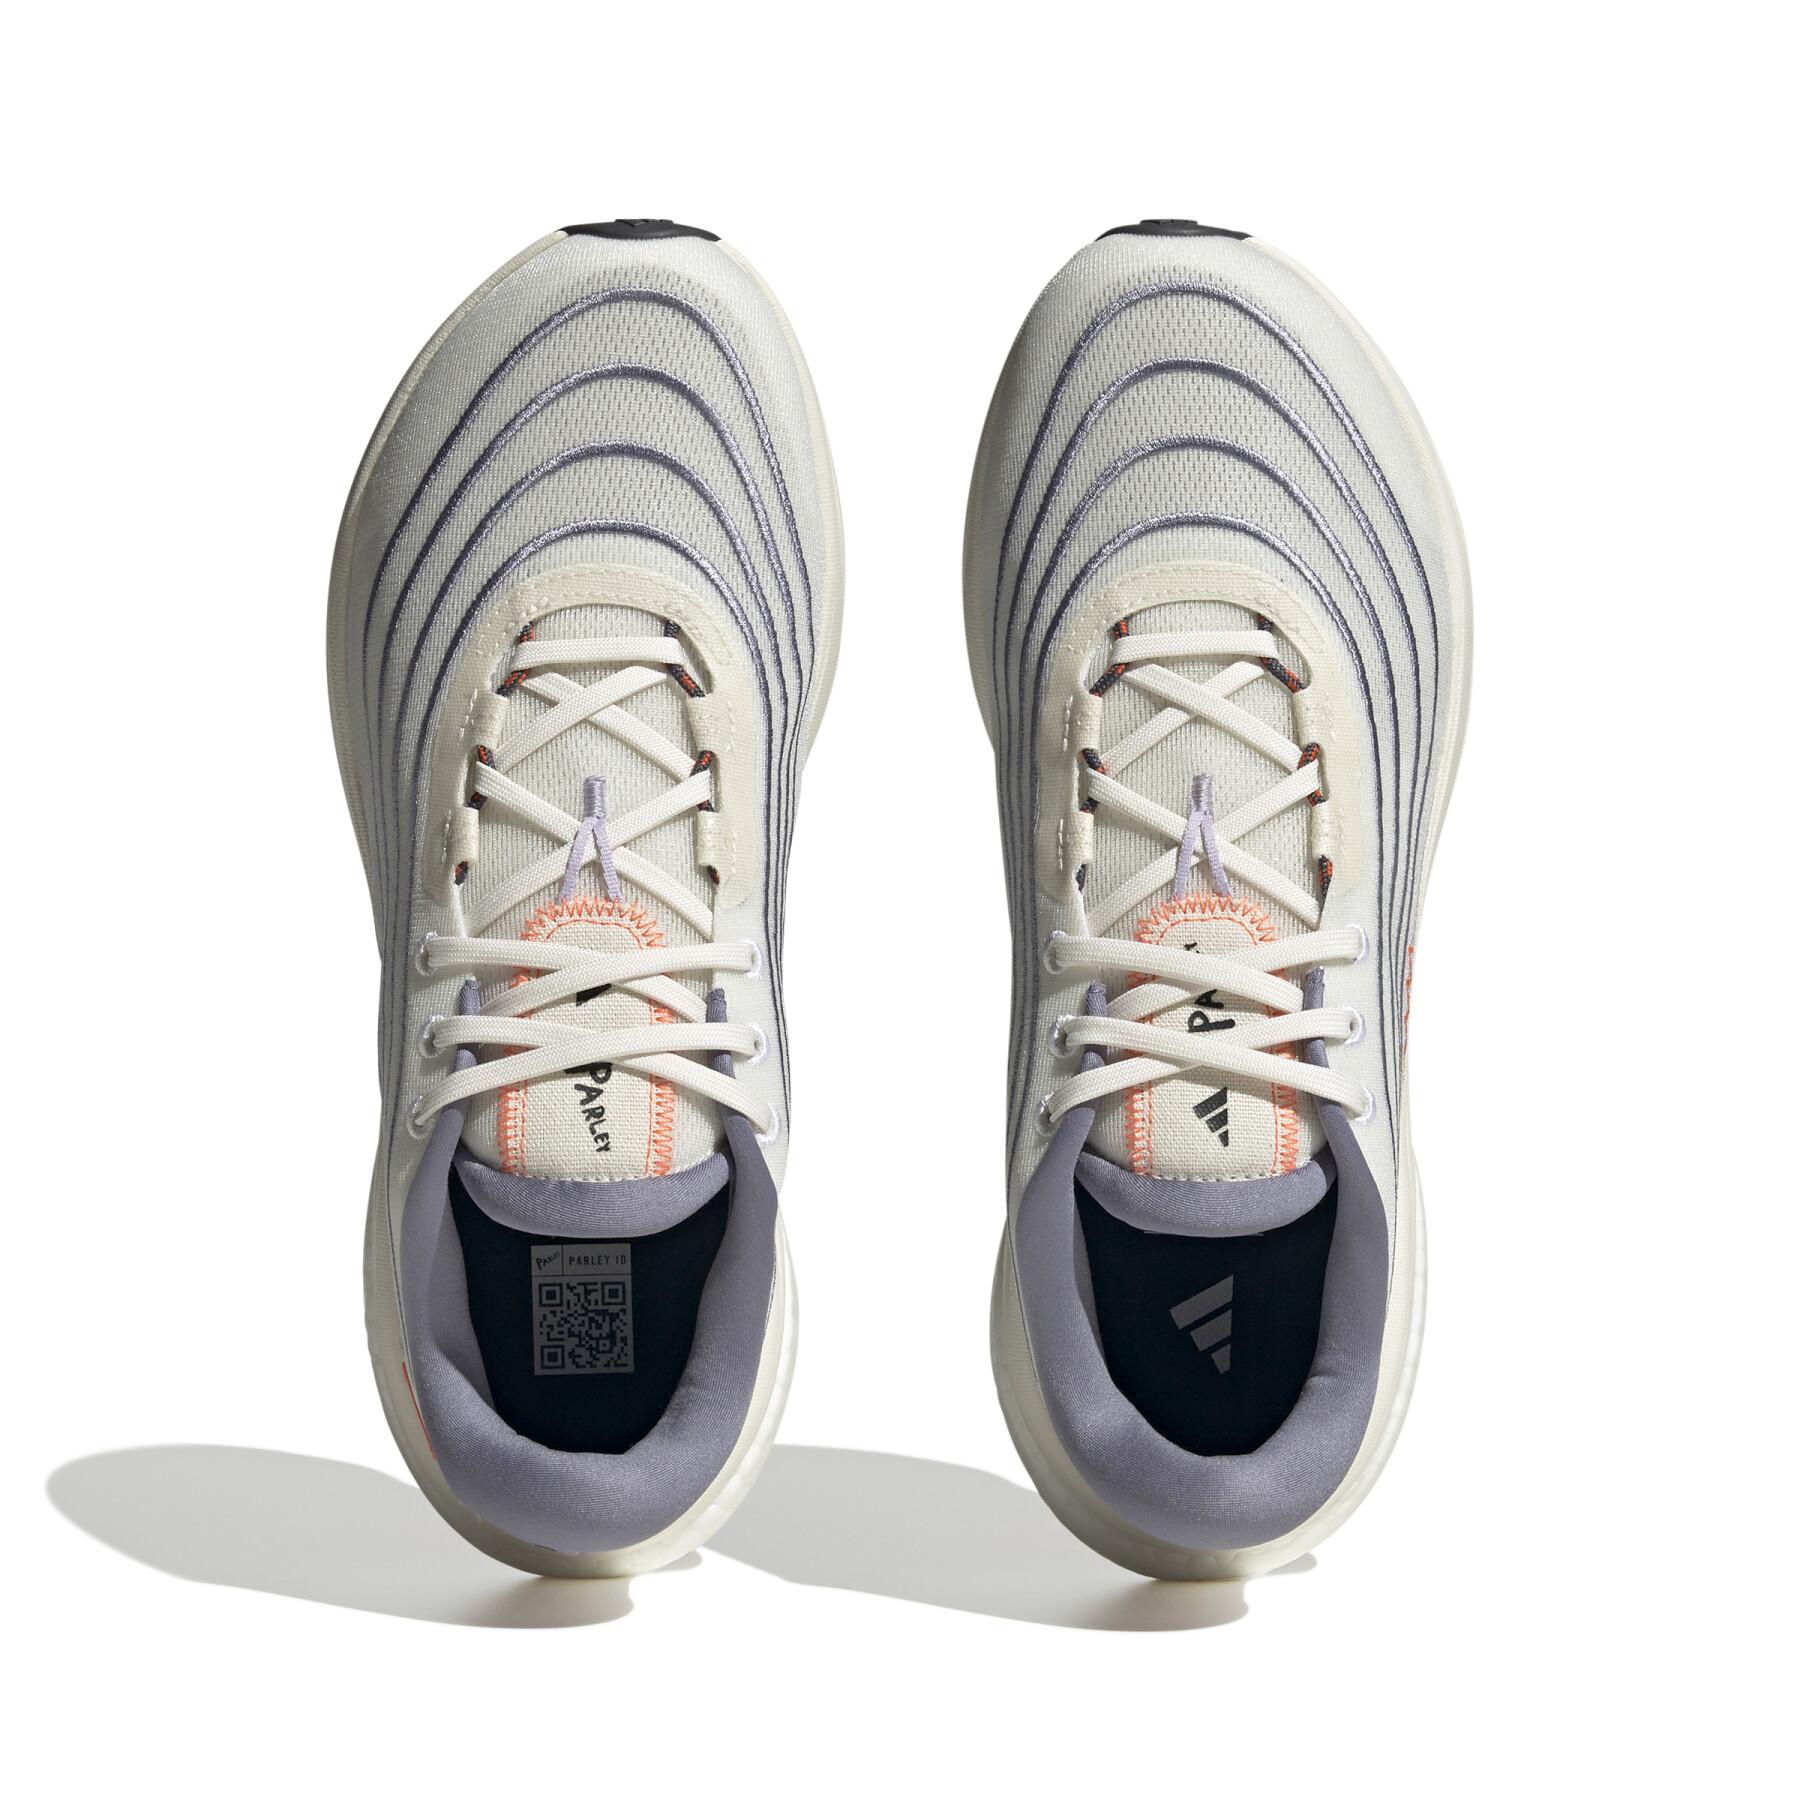 Chaussures de running adidas Supernova 2.0 x Parley